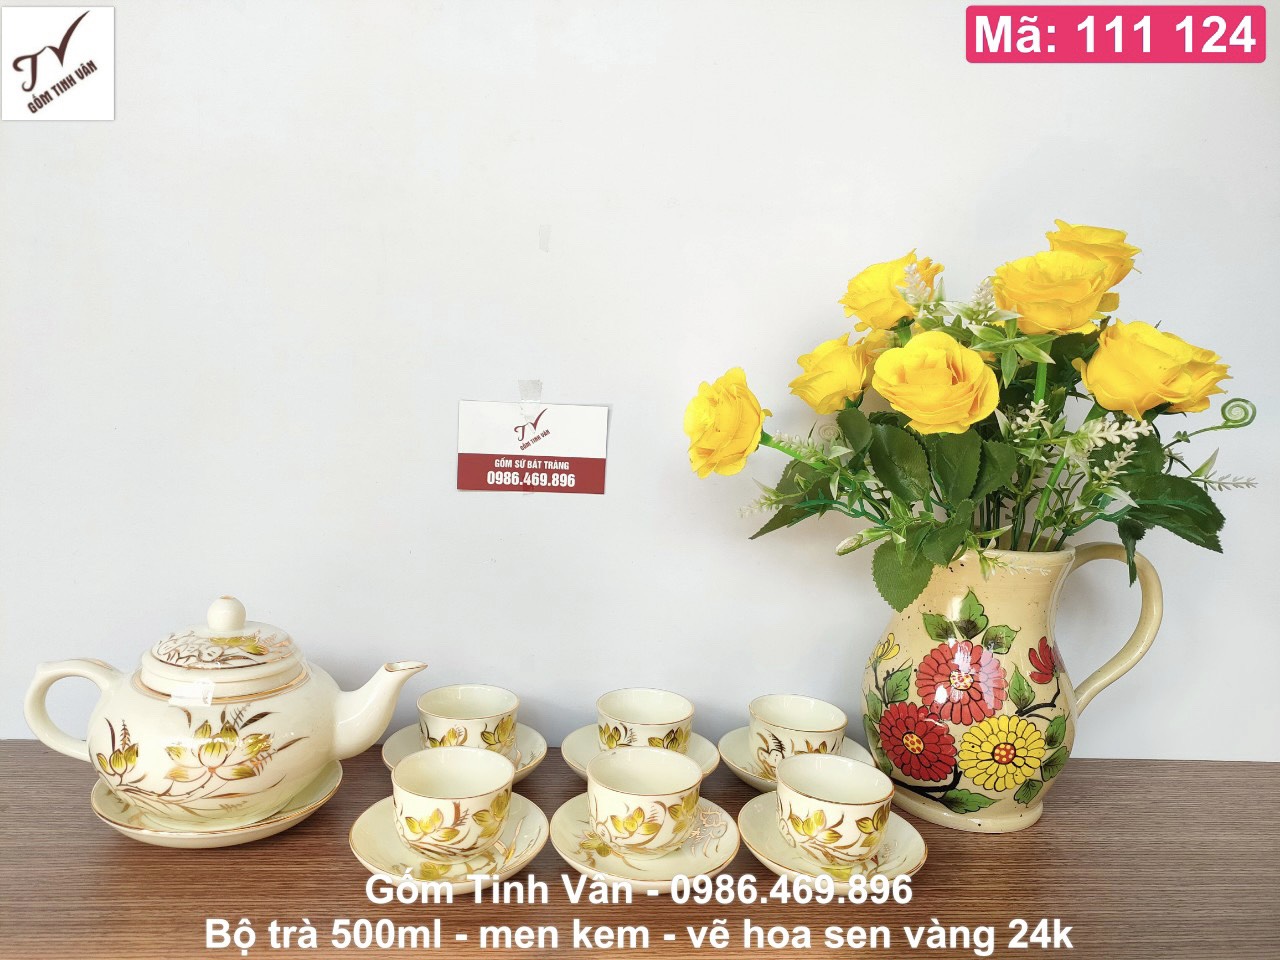 Bộ bình trà men kem hoa sen vàng 24k cao cấp, mã 111124, 1 ấm 650ml, 6 chén, 7 đĩa, gốm bát tràng tinh vân